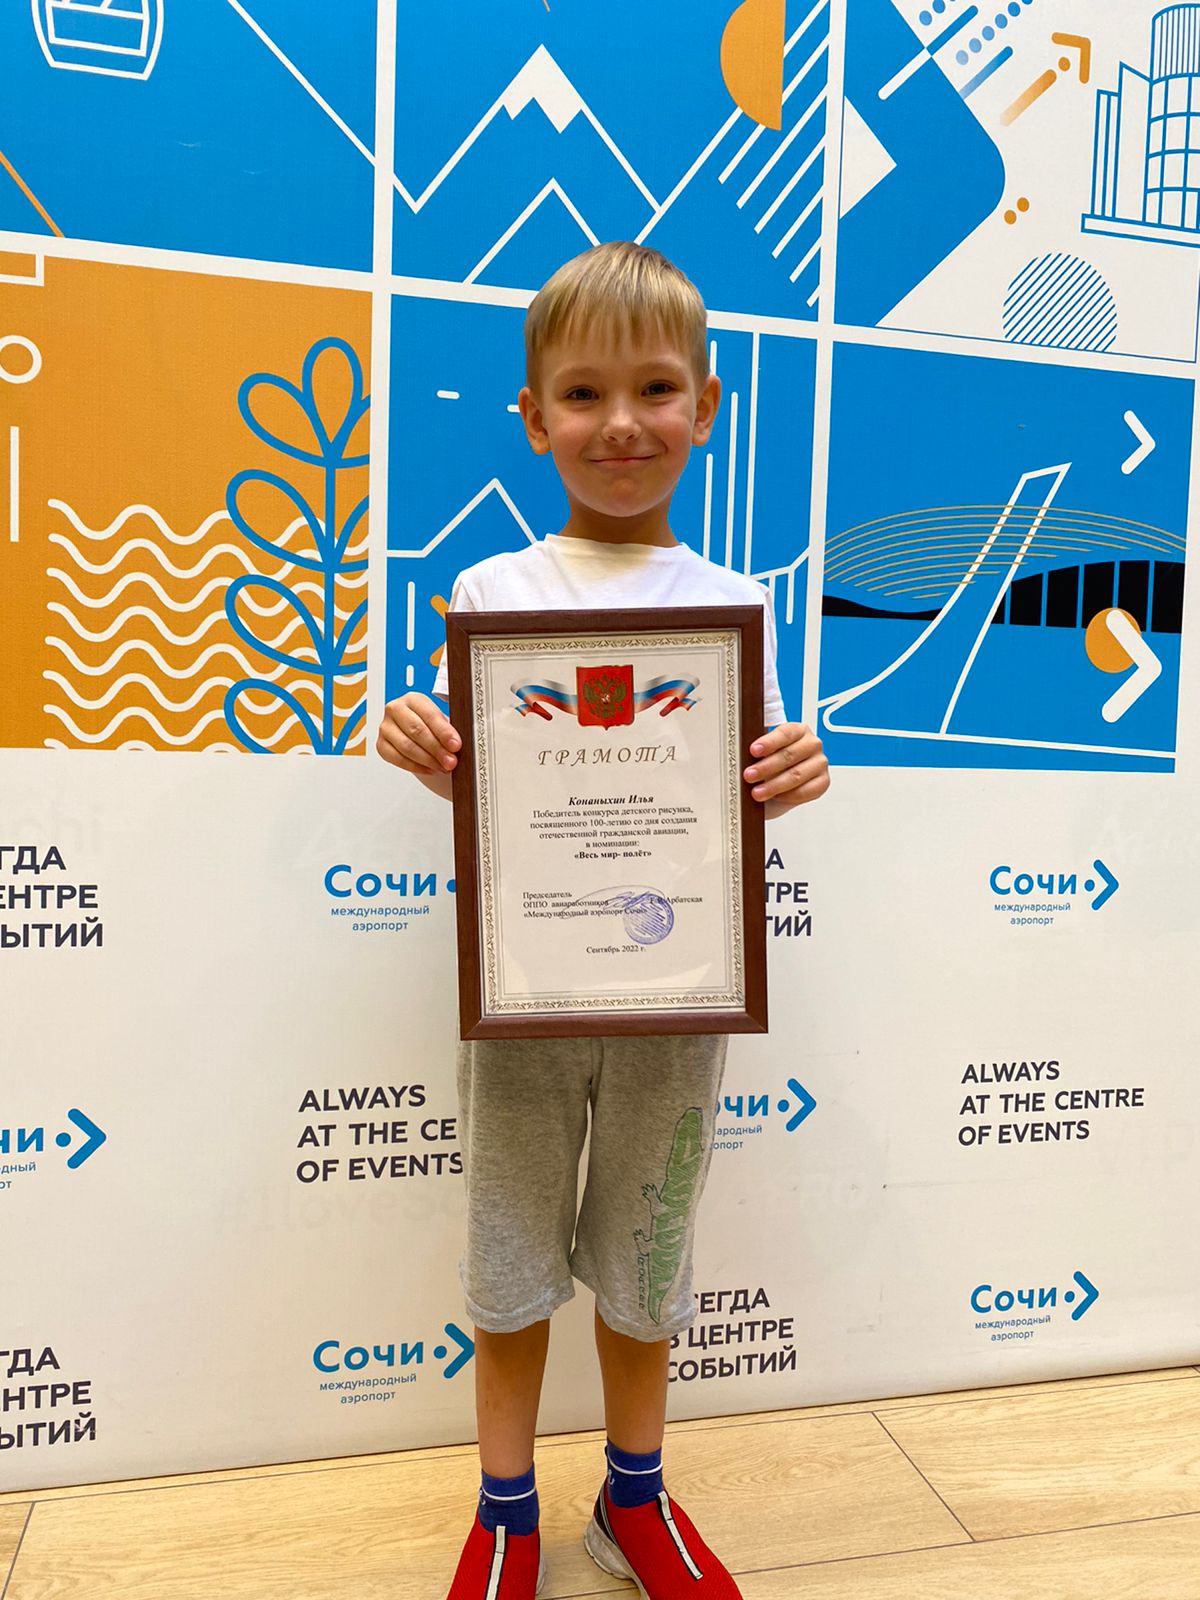 Юный художник из Сочи победил во Всероссийском конкурсе к 100-летию гражданской авиации